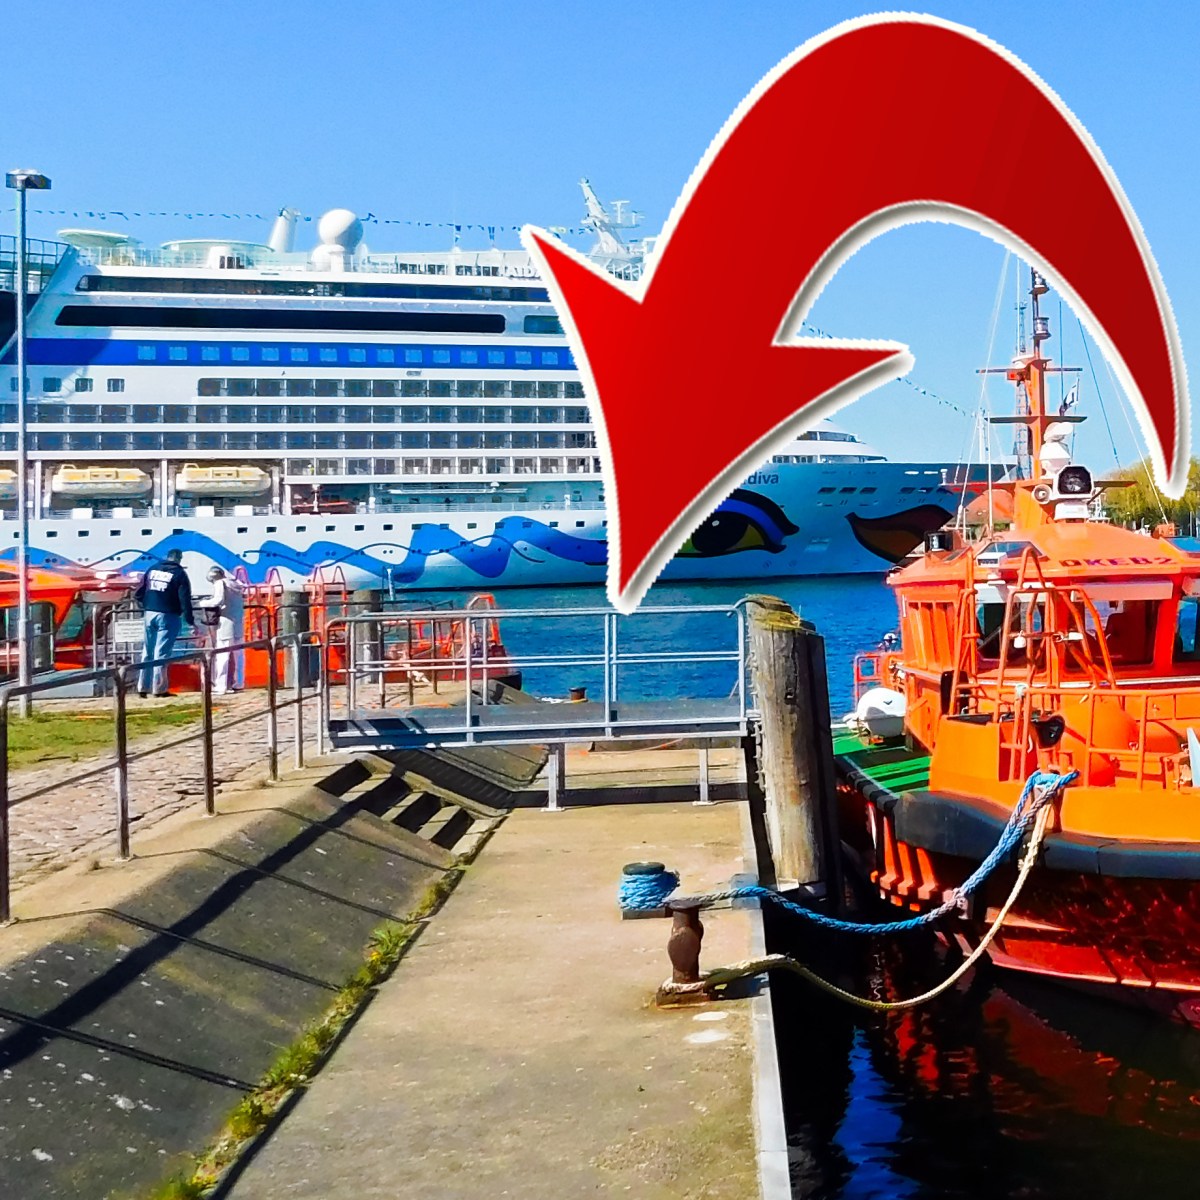 Kreuzfahrt: Aida-Schiff steckt im Hafen fest – plötzlich kippt die Stimmung